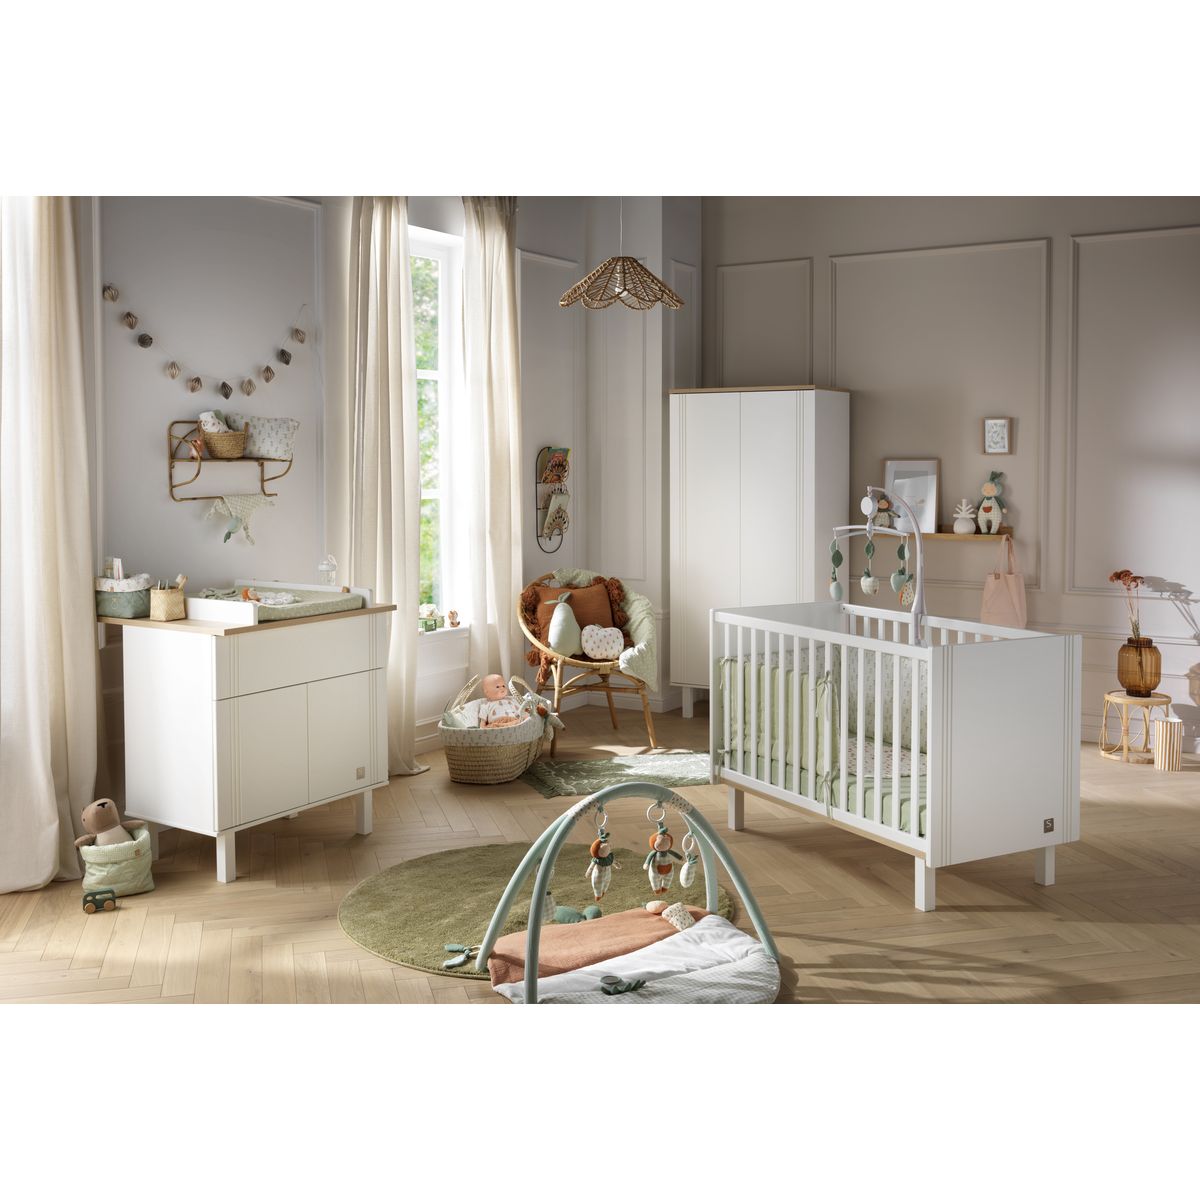 Tout pour la chambre de bébé : lits bébé, lits évolutifs, articles pour bébé  – Sauthon